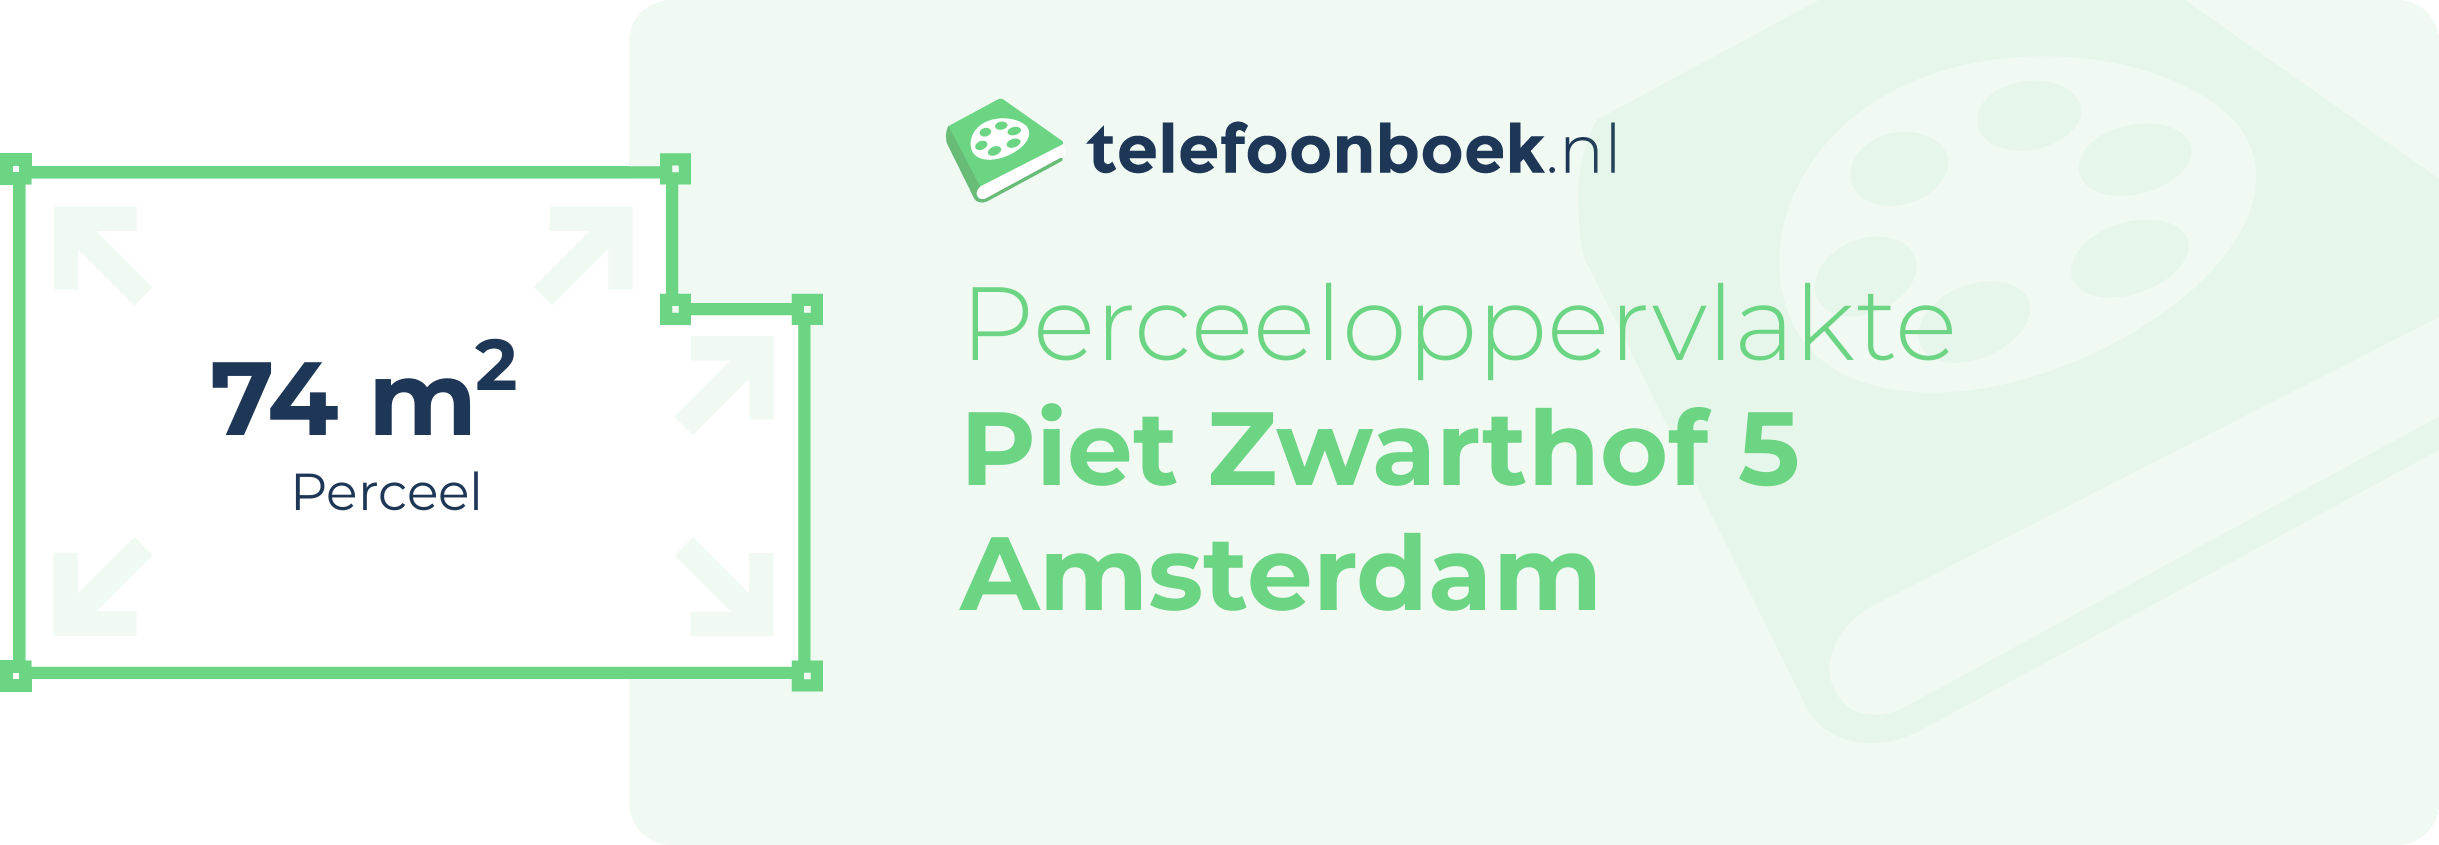 Perceeloppervlakte Piet Zwarthof 5 Amsterdam